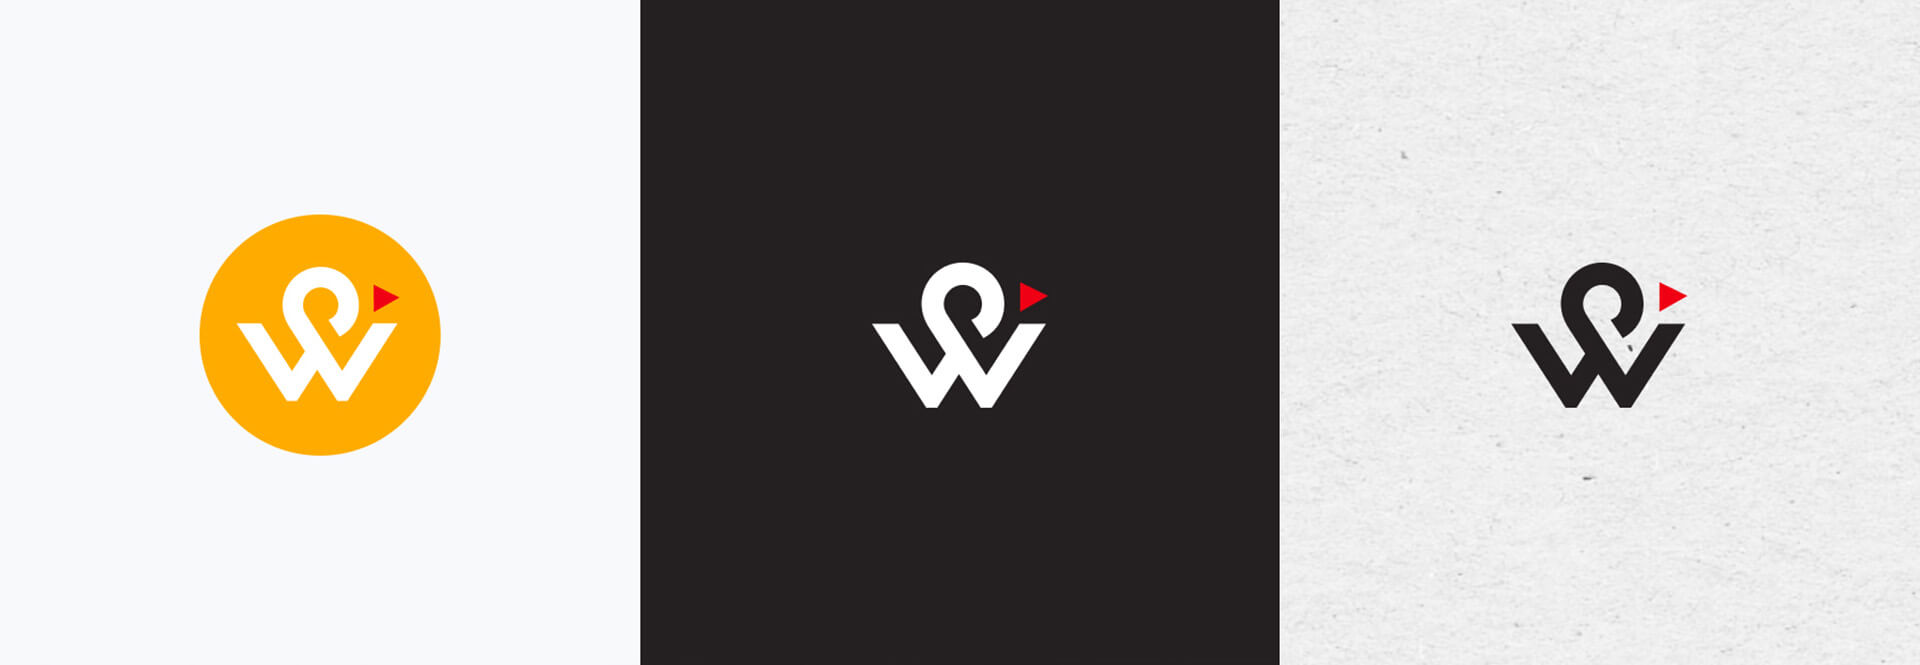 Wonderbird快餐品牌视觉设计